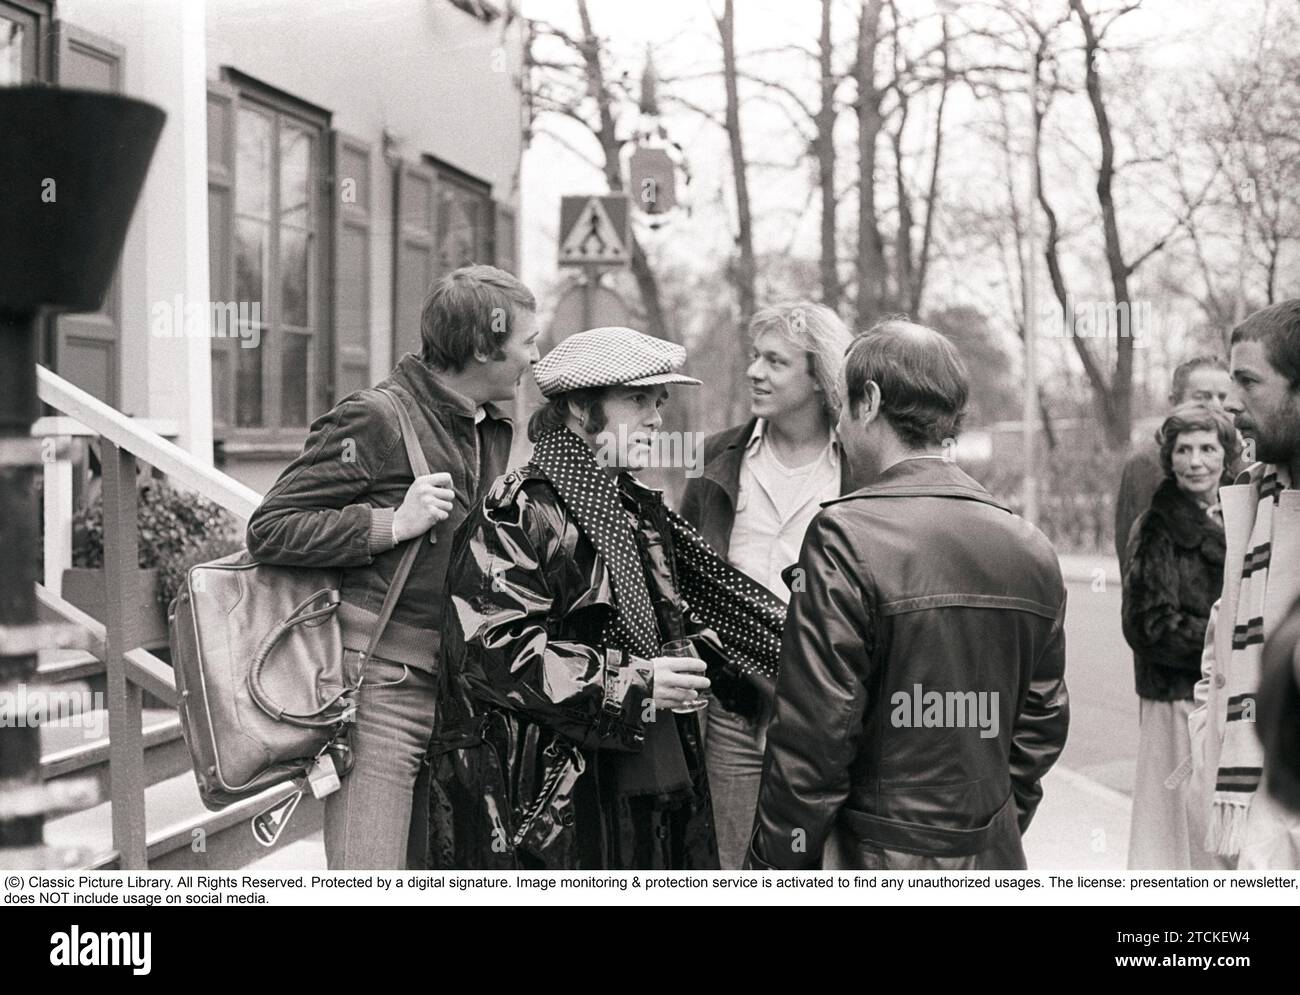 Elton John. Cantante inglese, cantautore nato nel marzo 25 1947. Nella foto indossa un berretto a scacchi e una sciarpa a scacchi abbinata durante una visita in Svezia 1978. Kristoffersson Foto Stock